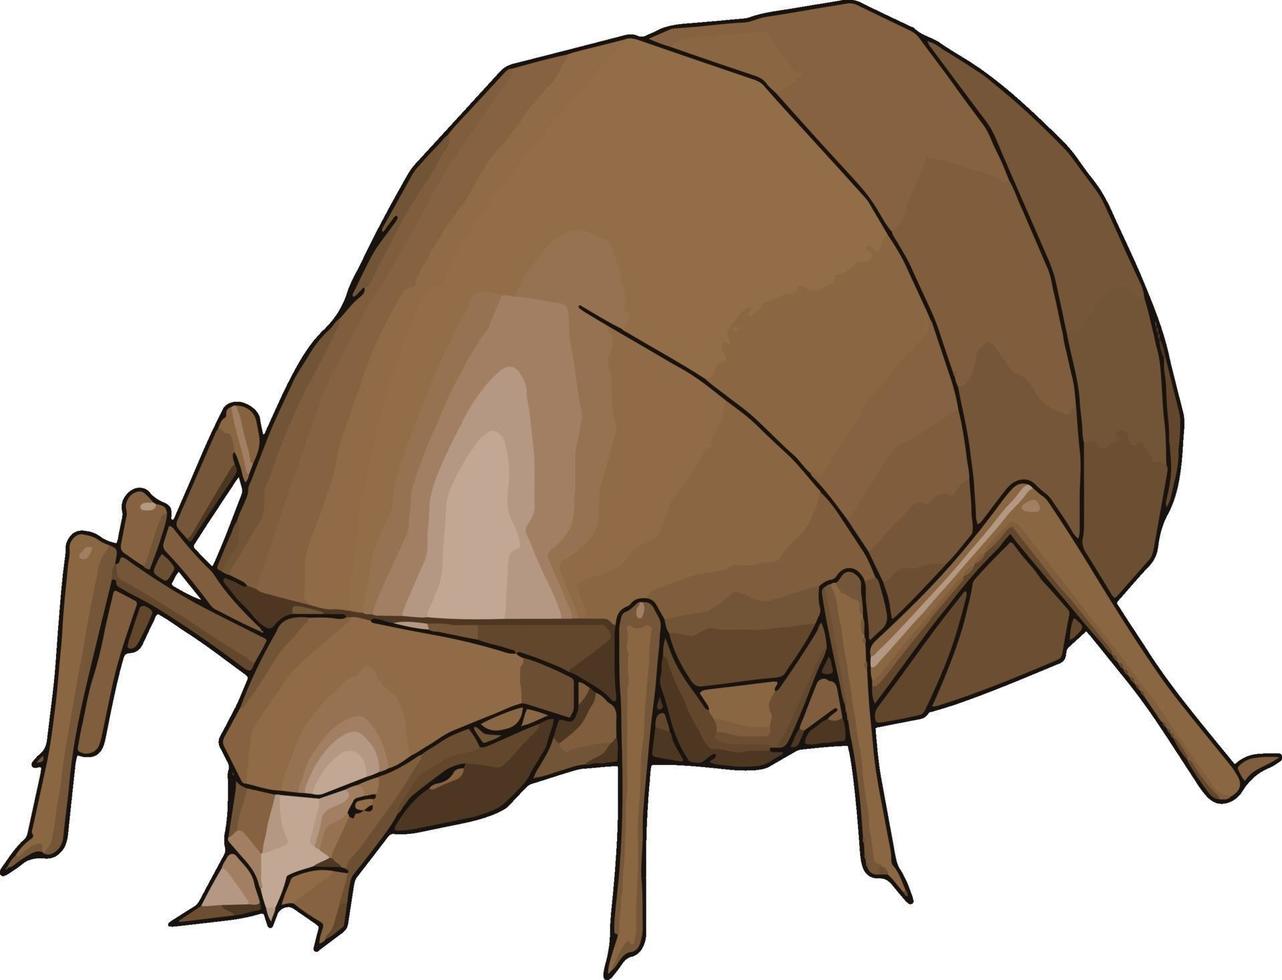 Escarabajo rinoceronte 3d, ilustración, vector sobre fondo blanco.